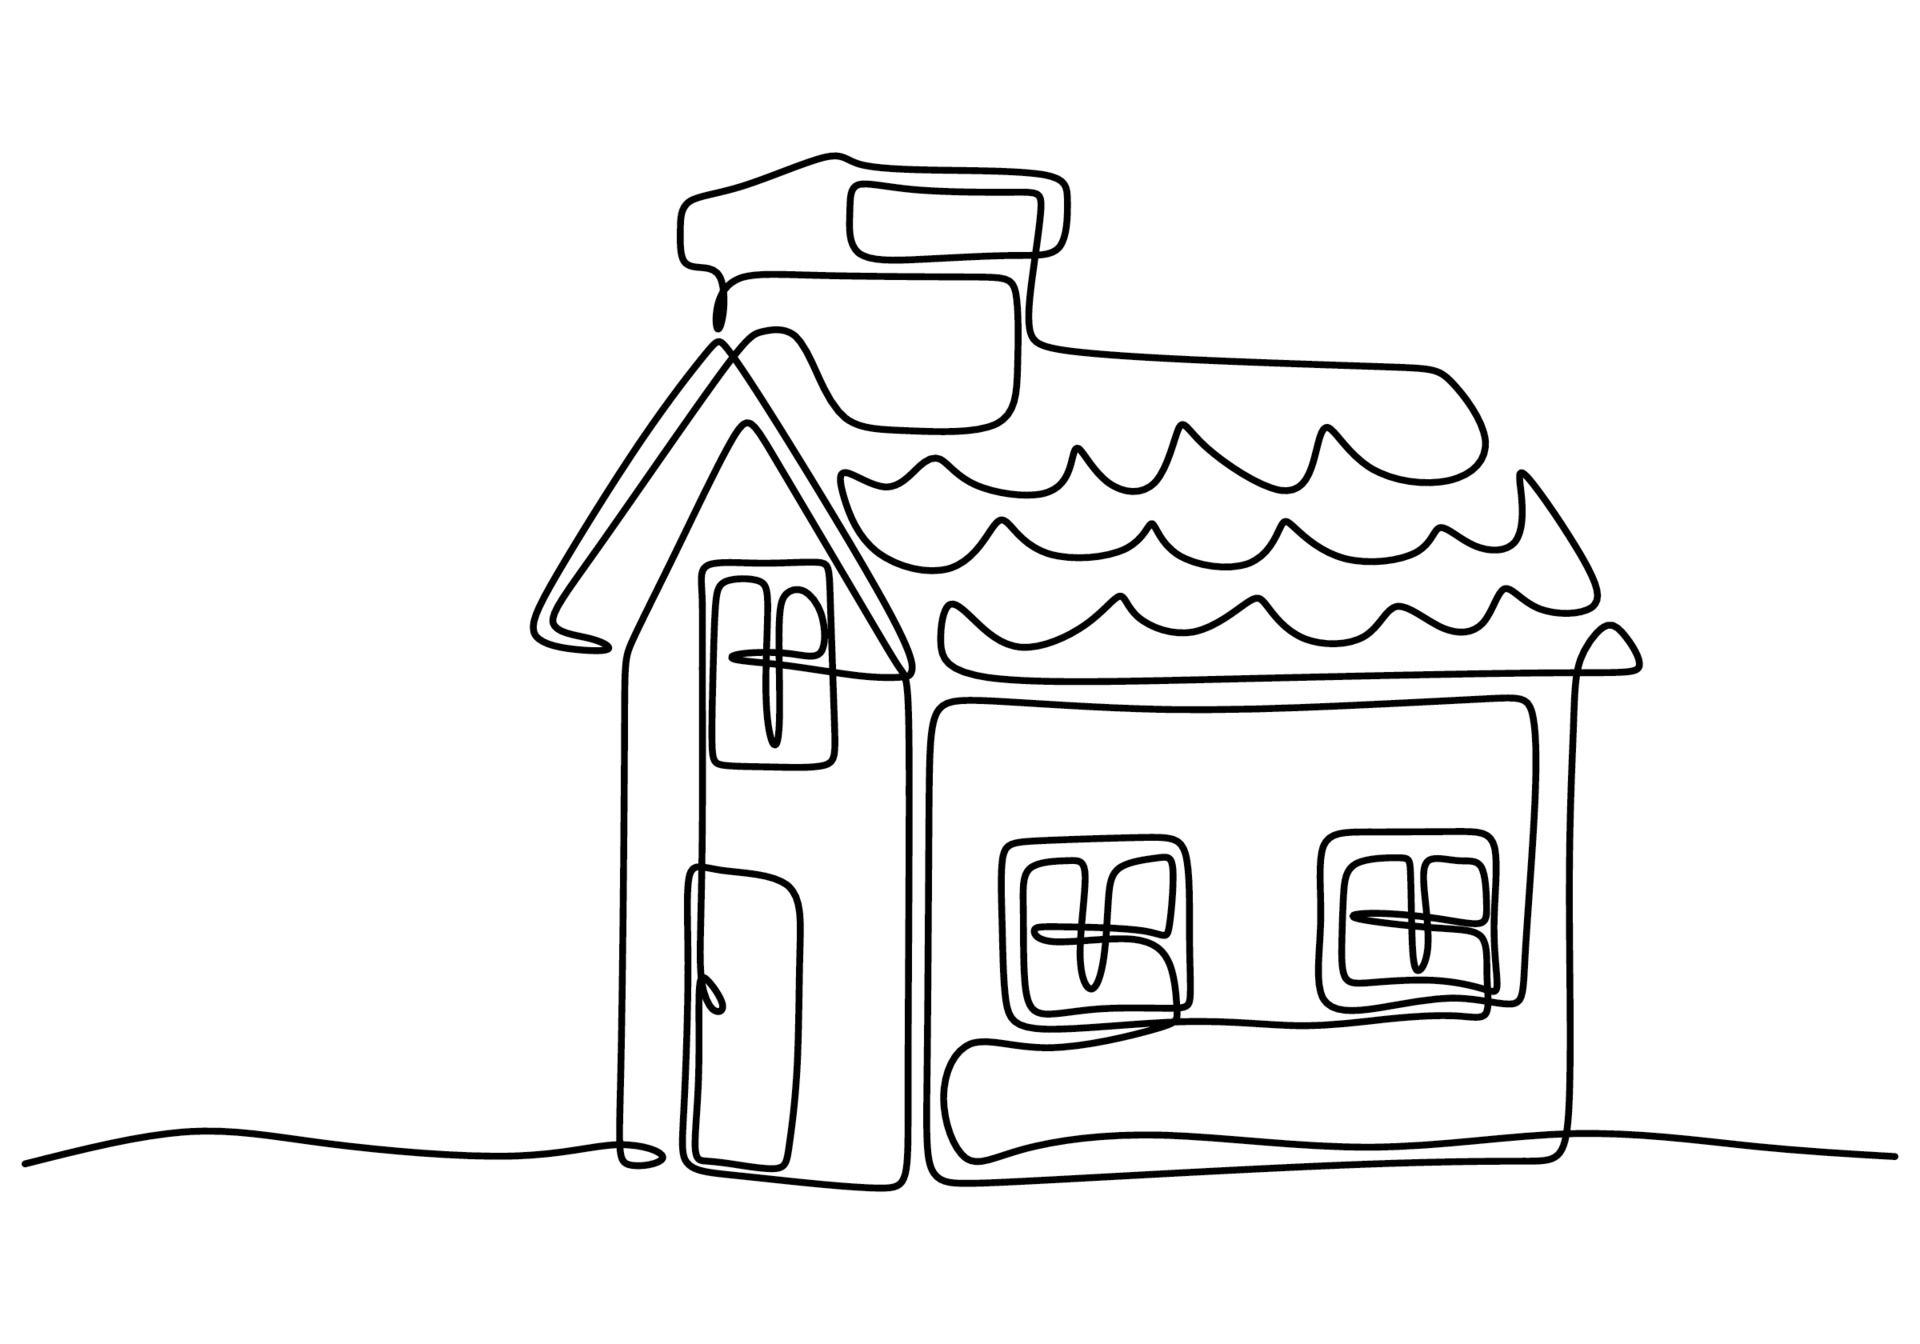 Family house sketch icon. | Stock vector | Colourbox